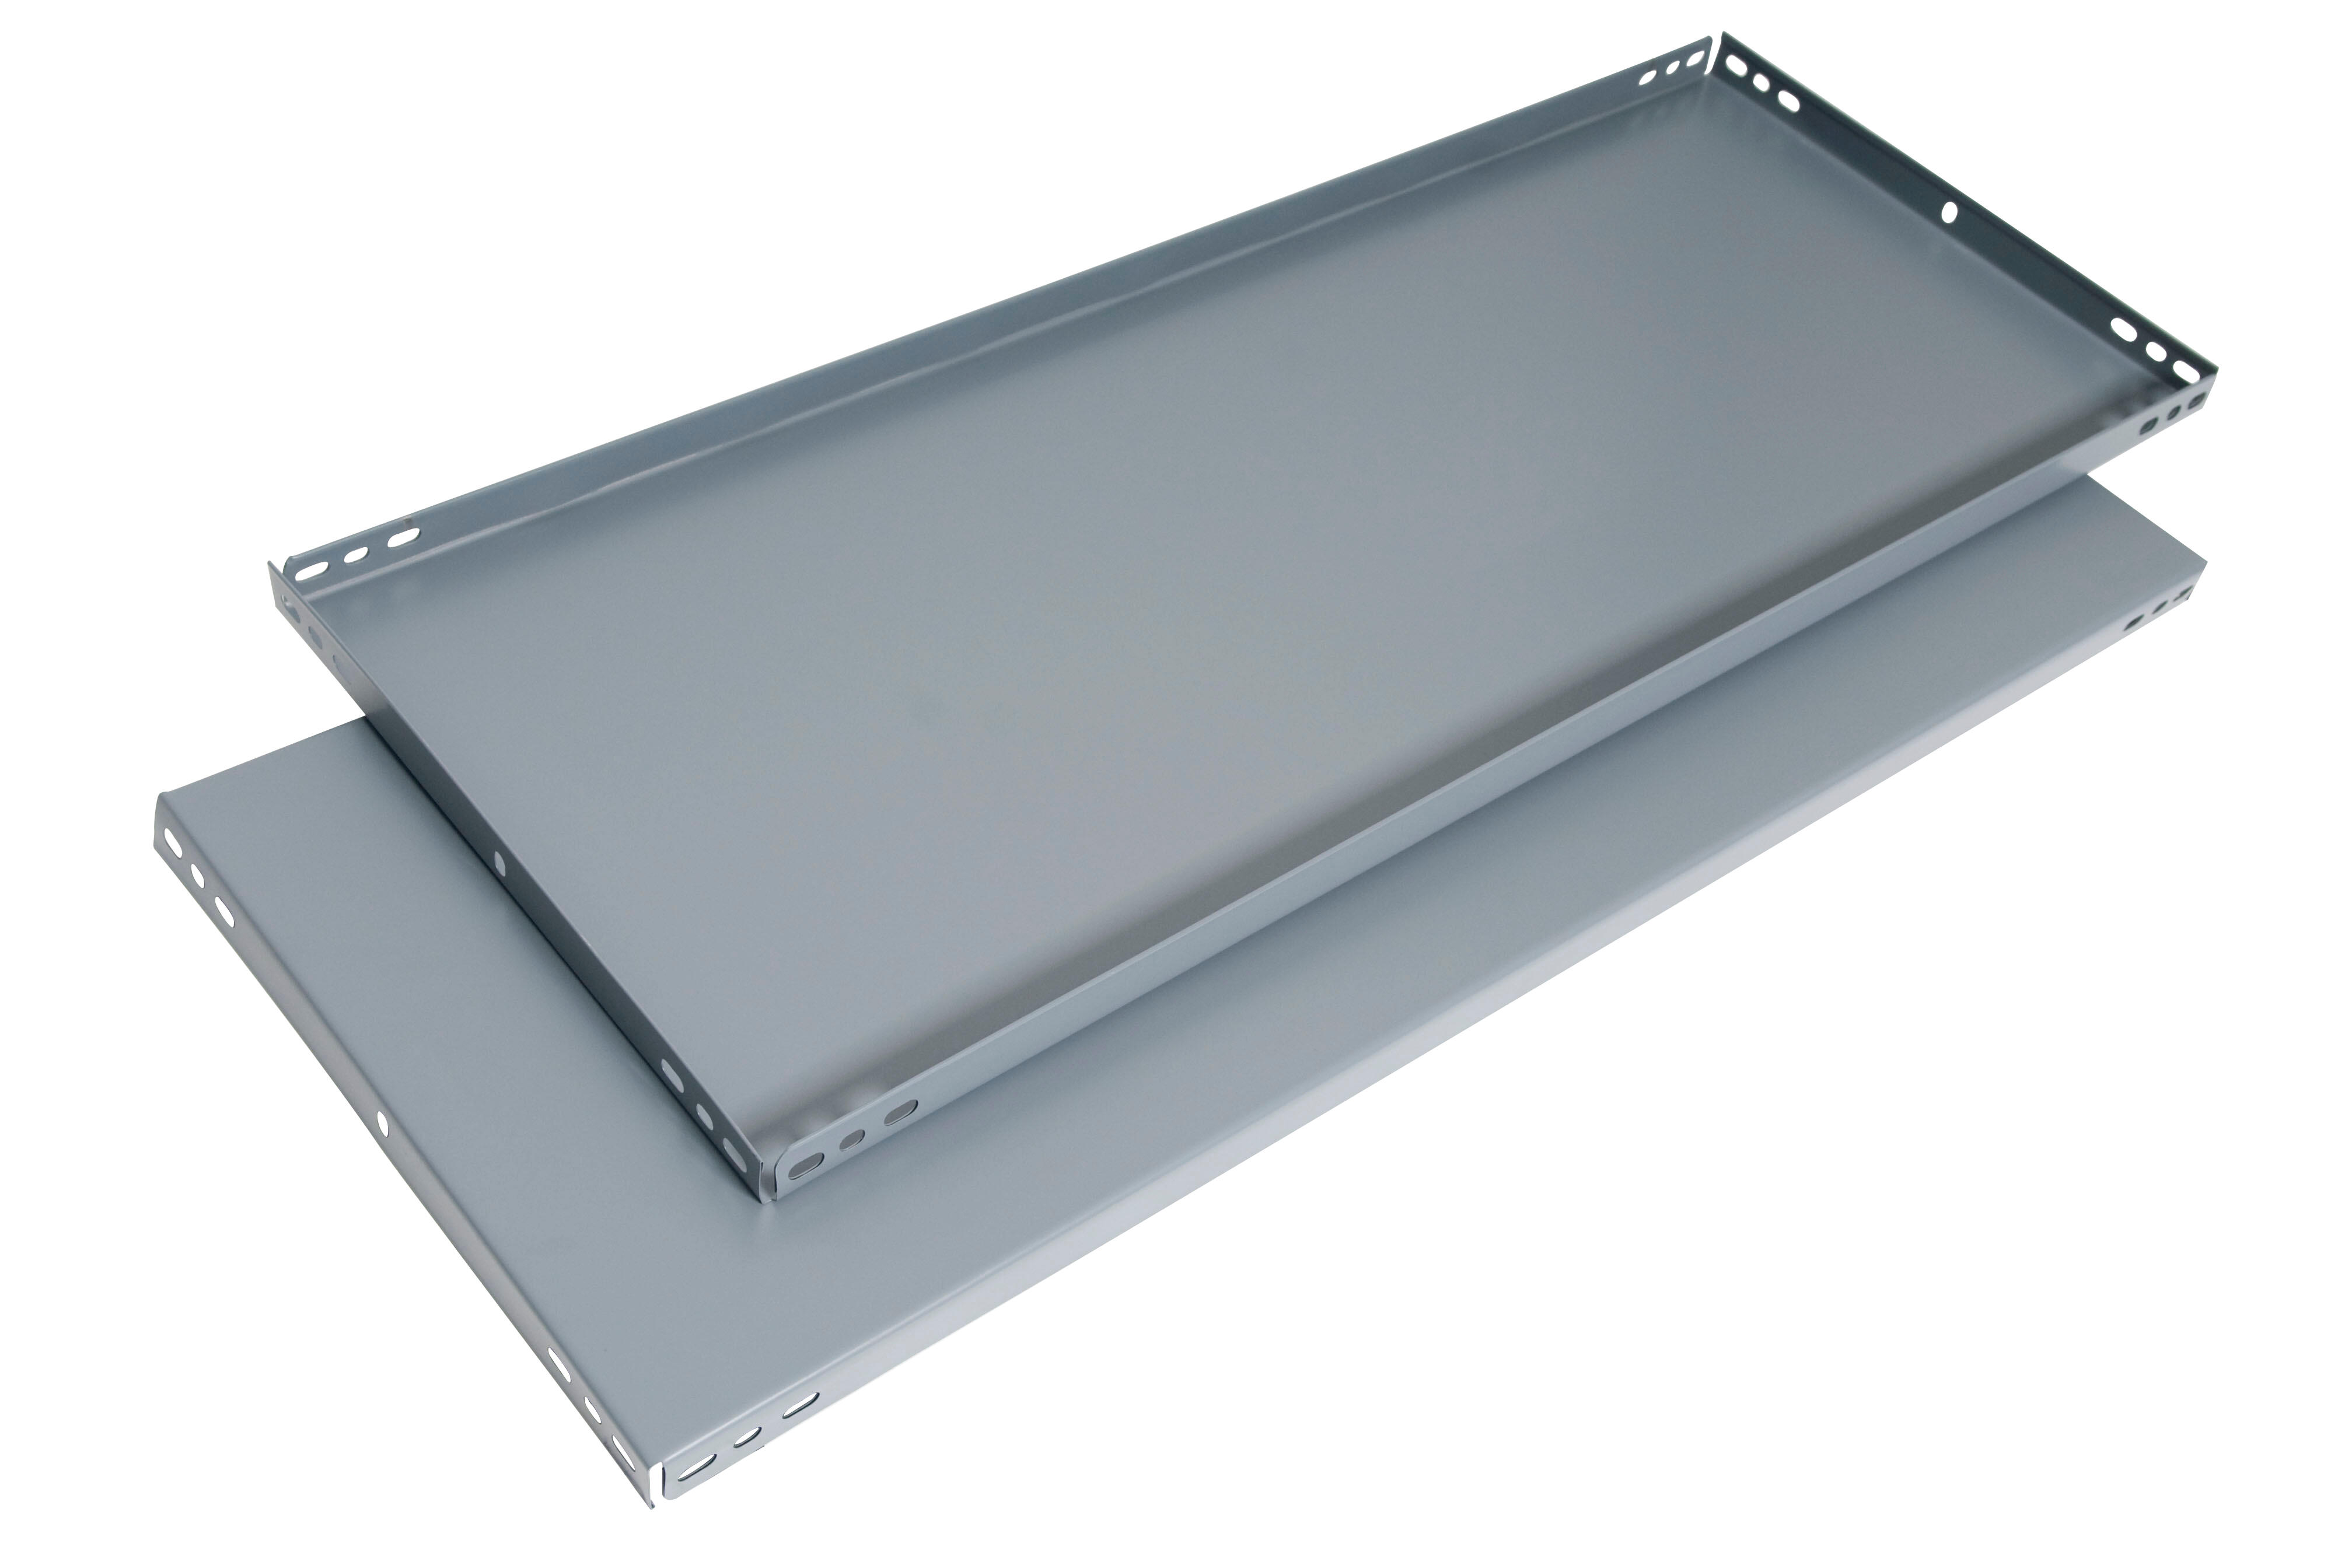 Balda recta para sistema de estantes de acero gris de 90x60cm